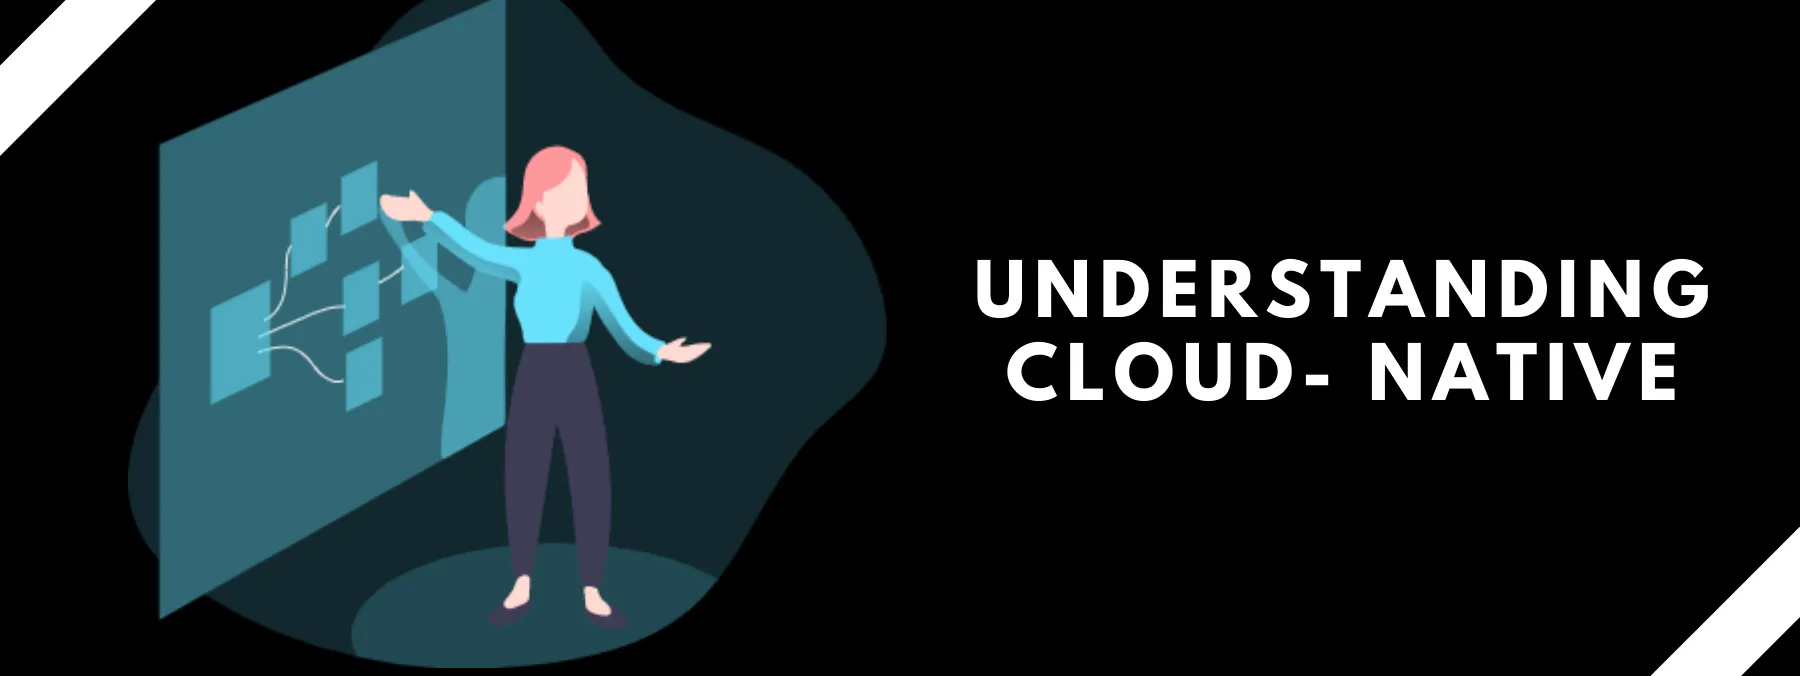 Understanding Cloud- Native